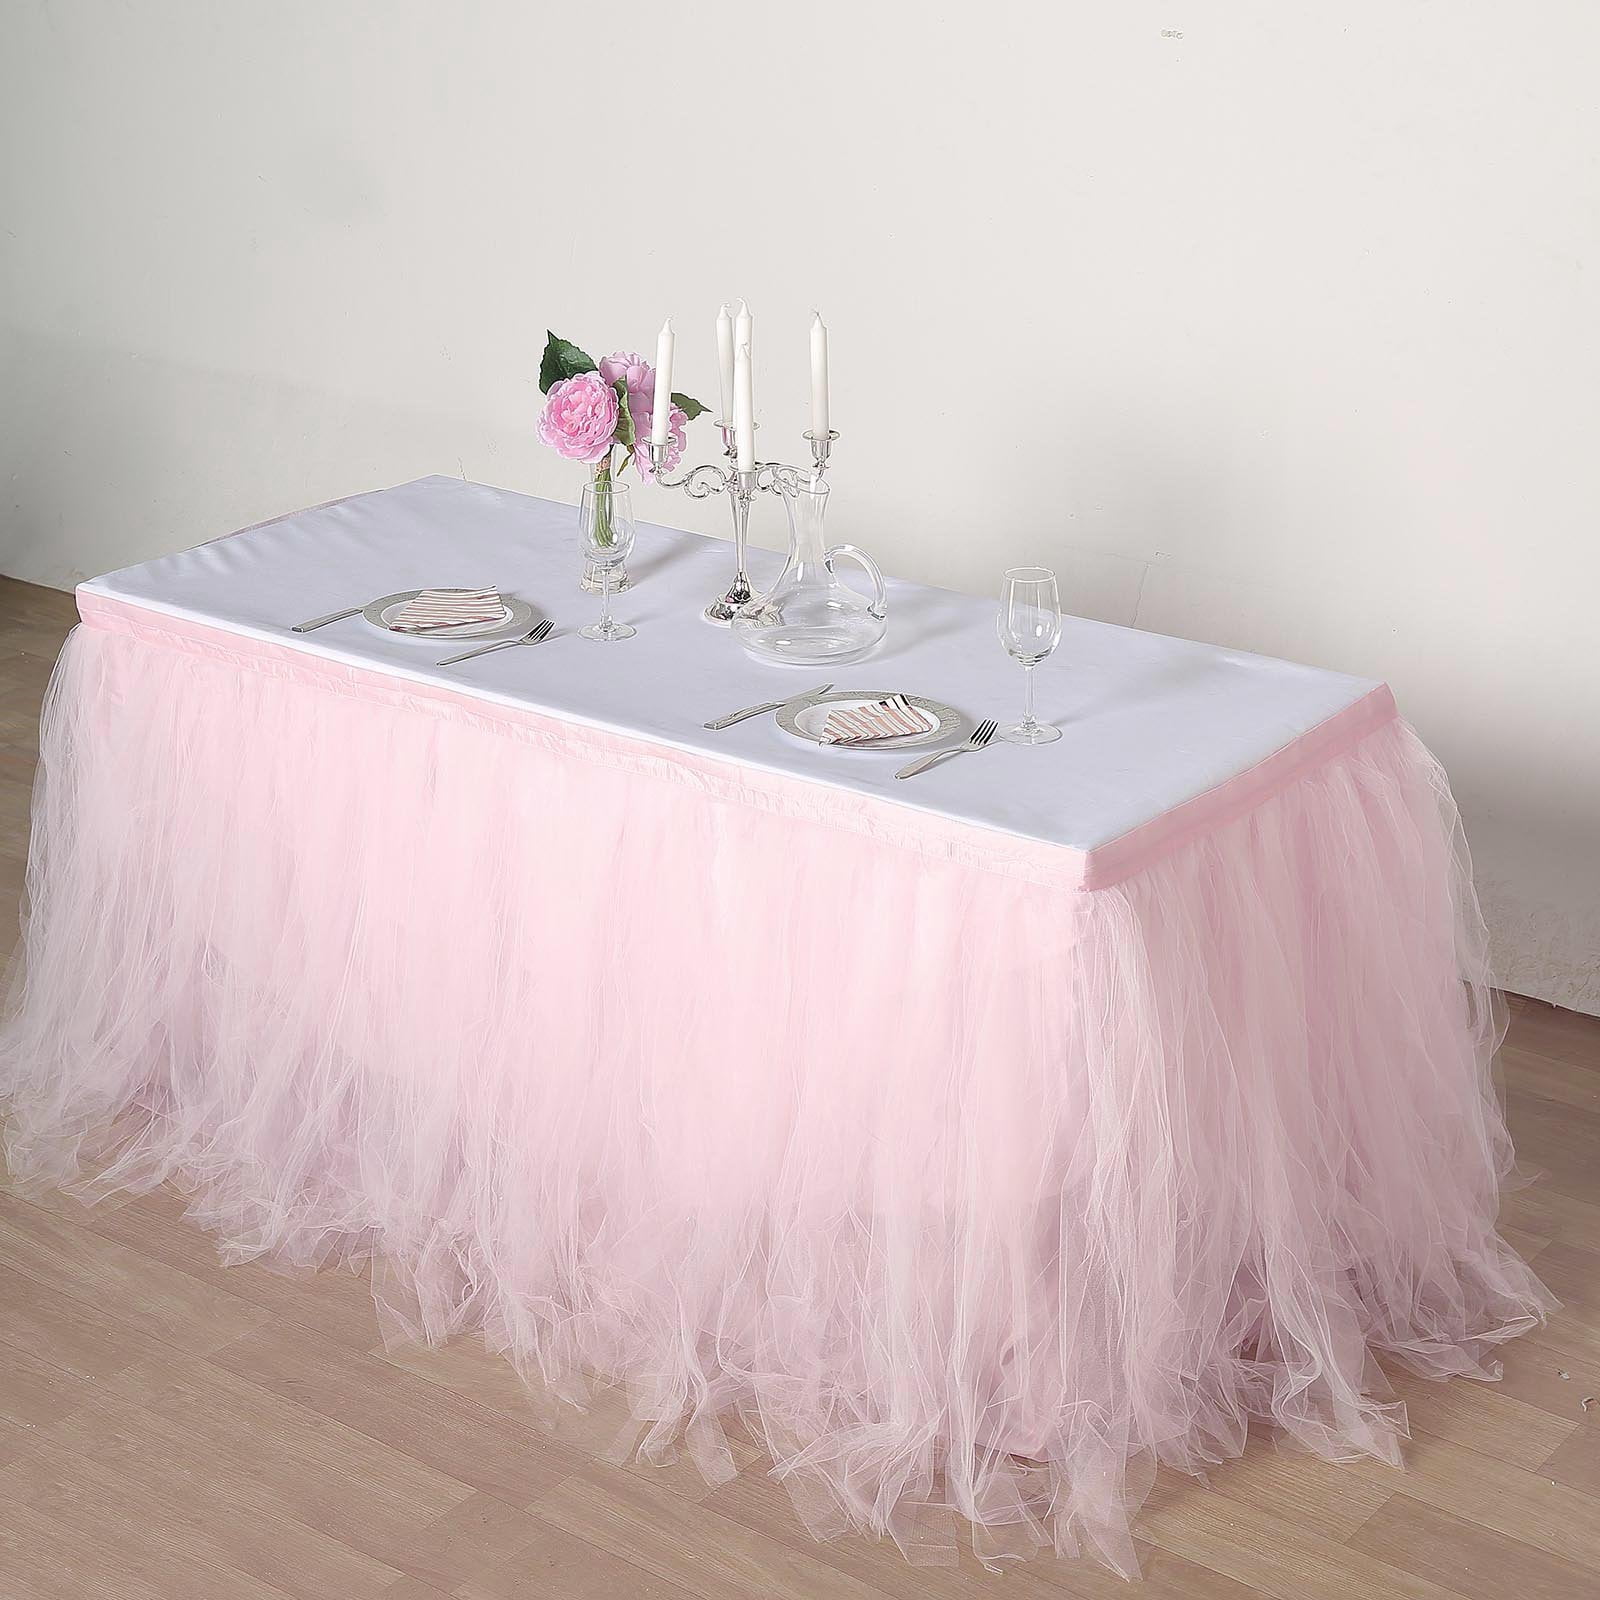 Efavormart 14ft Blush Full Size 4 Layer Fluffy Tulle Tutu Table Skirt